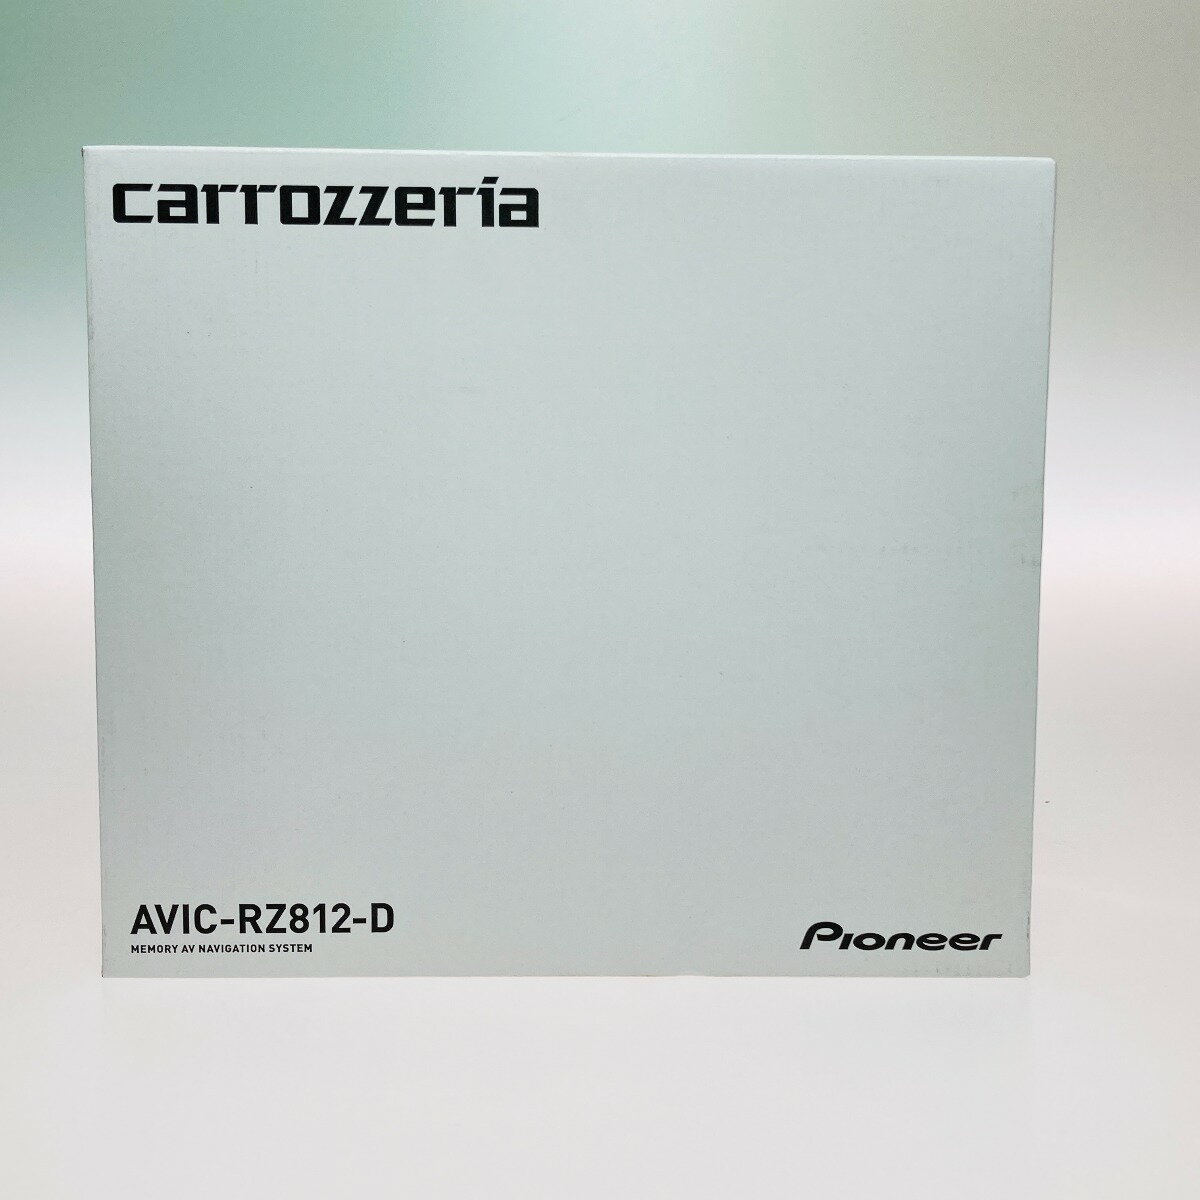 ◎◎【中古】Pioneer パイオニア carrozzeria カロッツェリア 楽ナビ メモリーナビ AVIC-RZ812-D カーナビ 656 Sランク